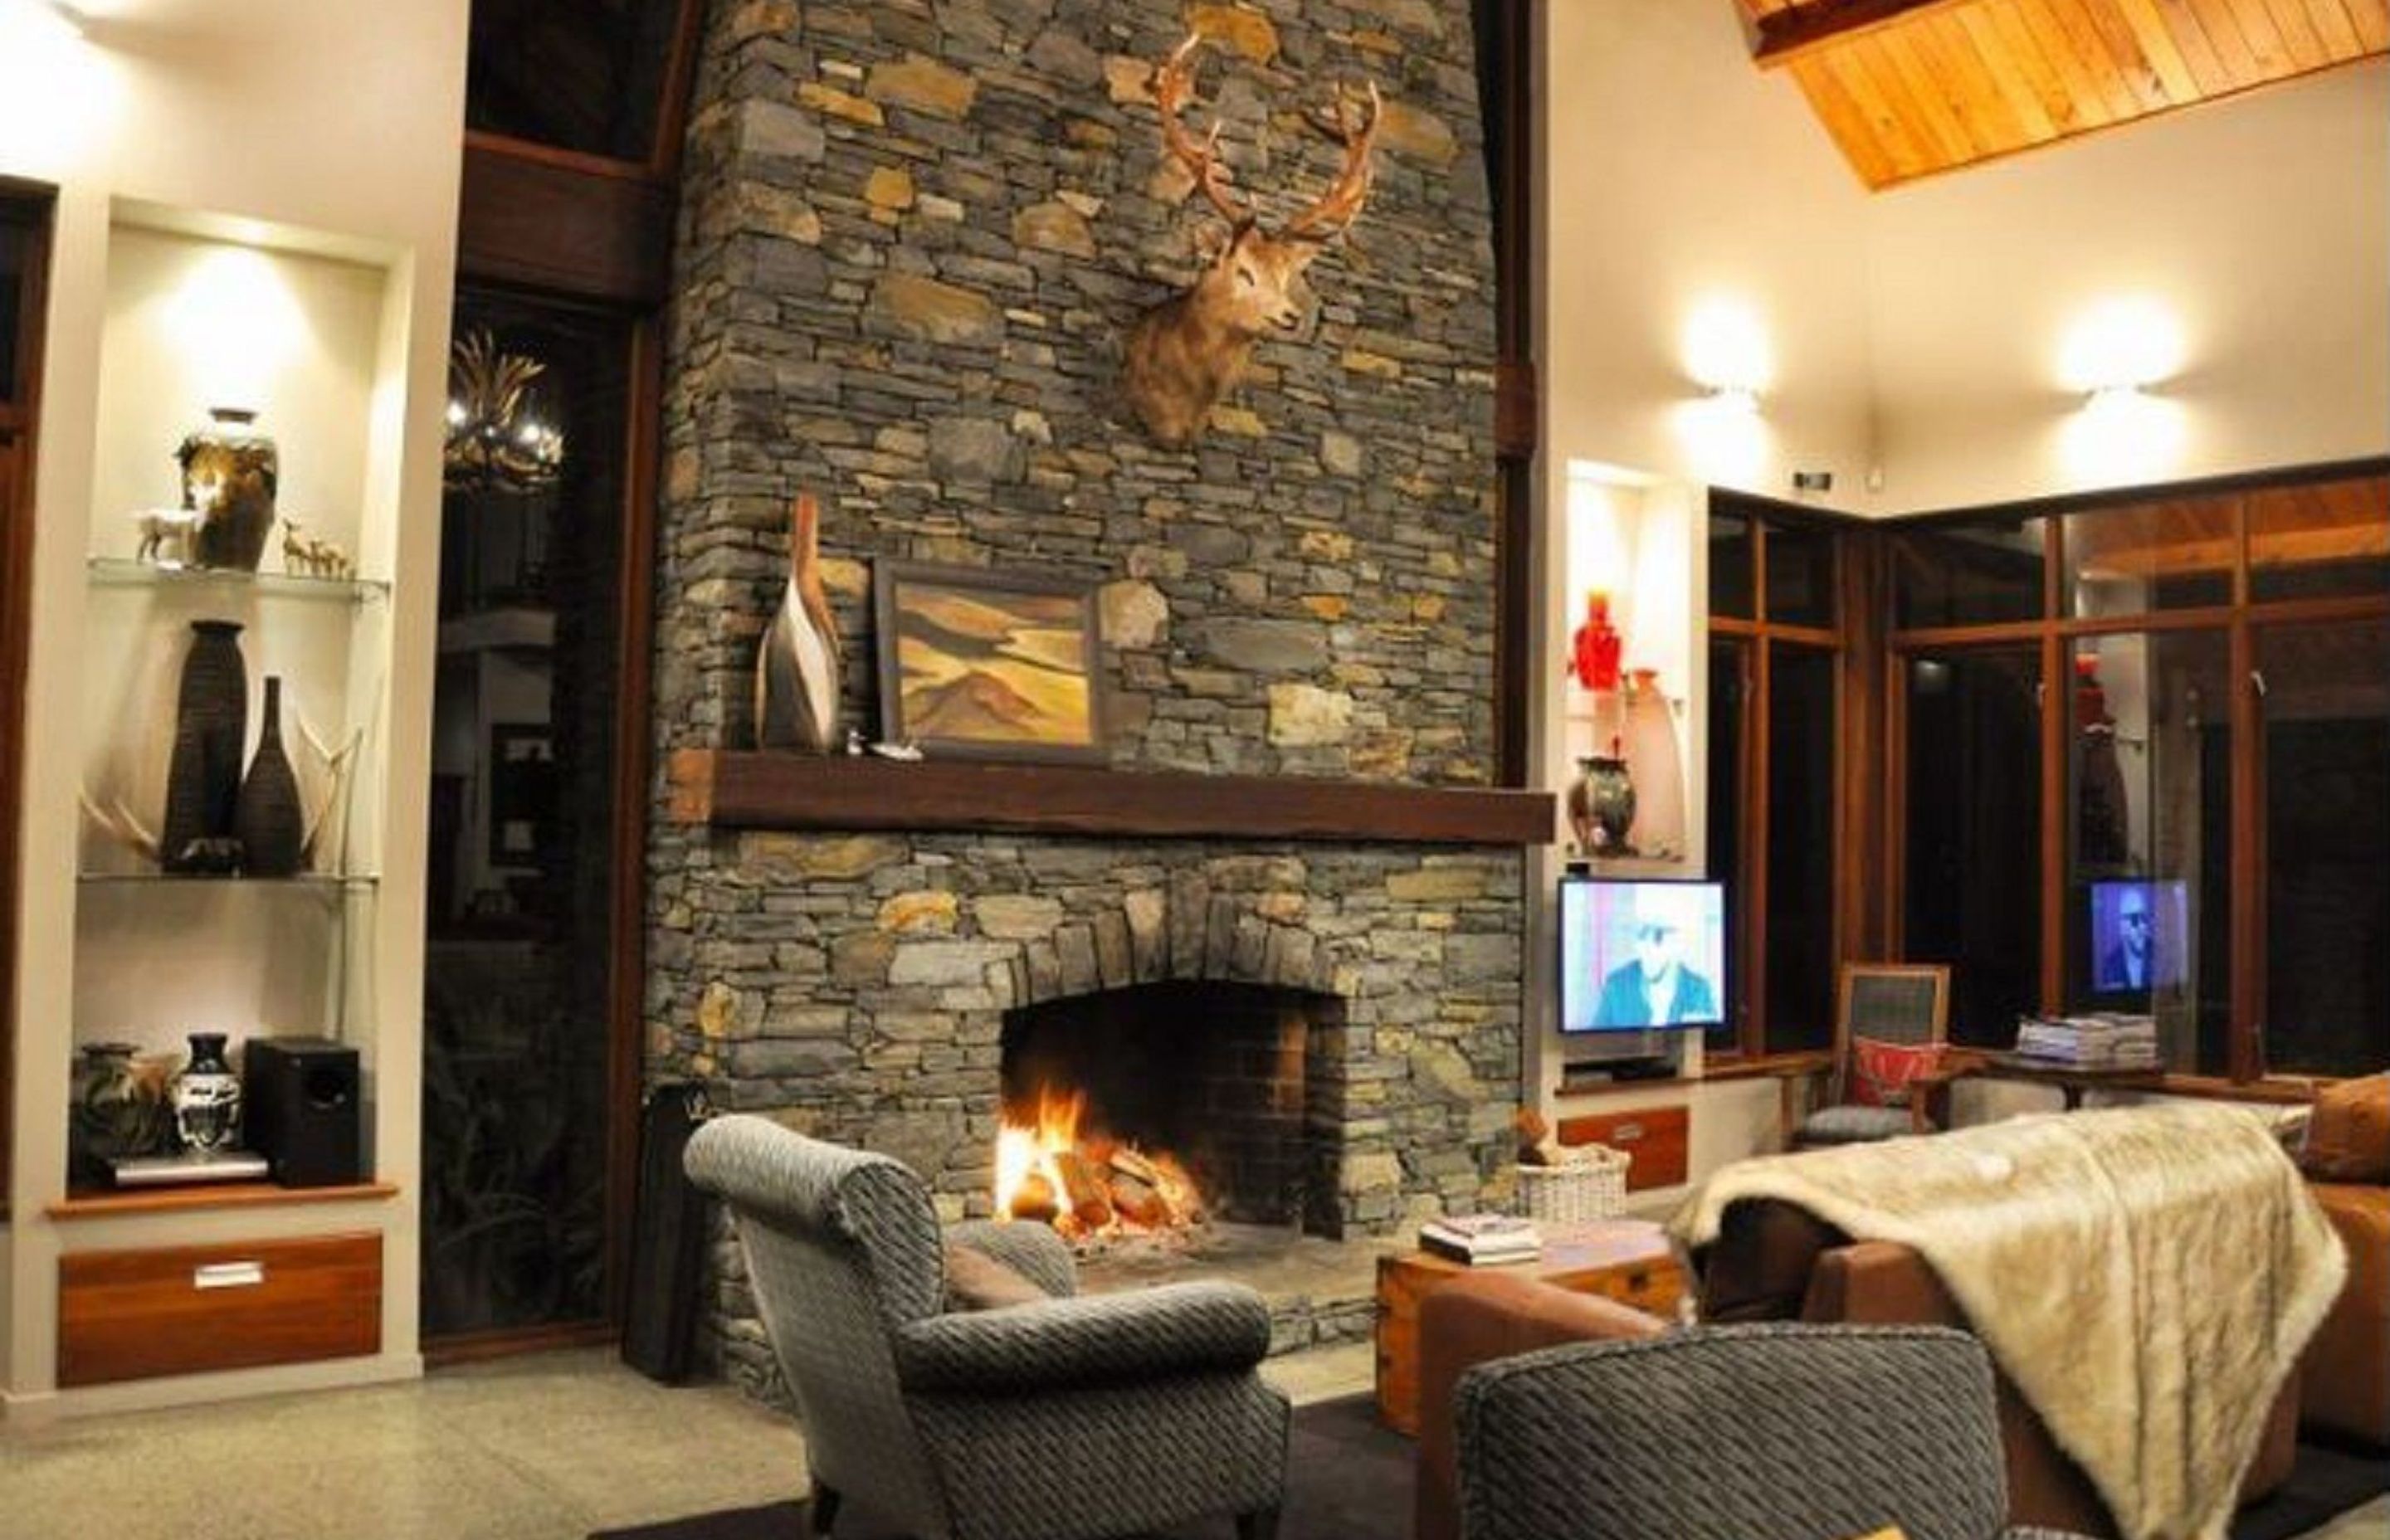 Lodge Style Home, Matakana